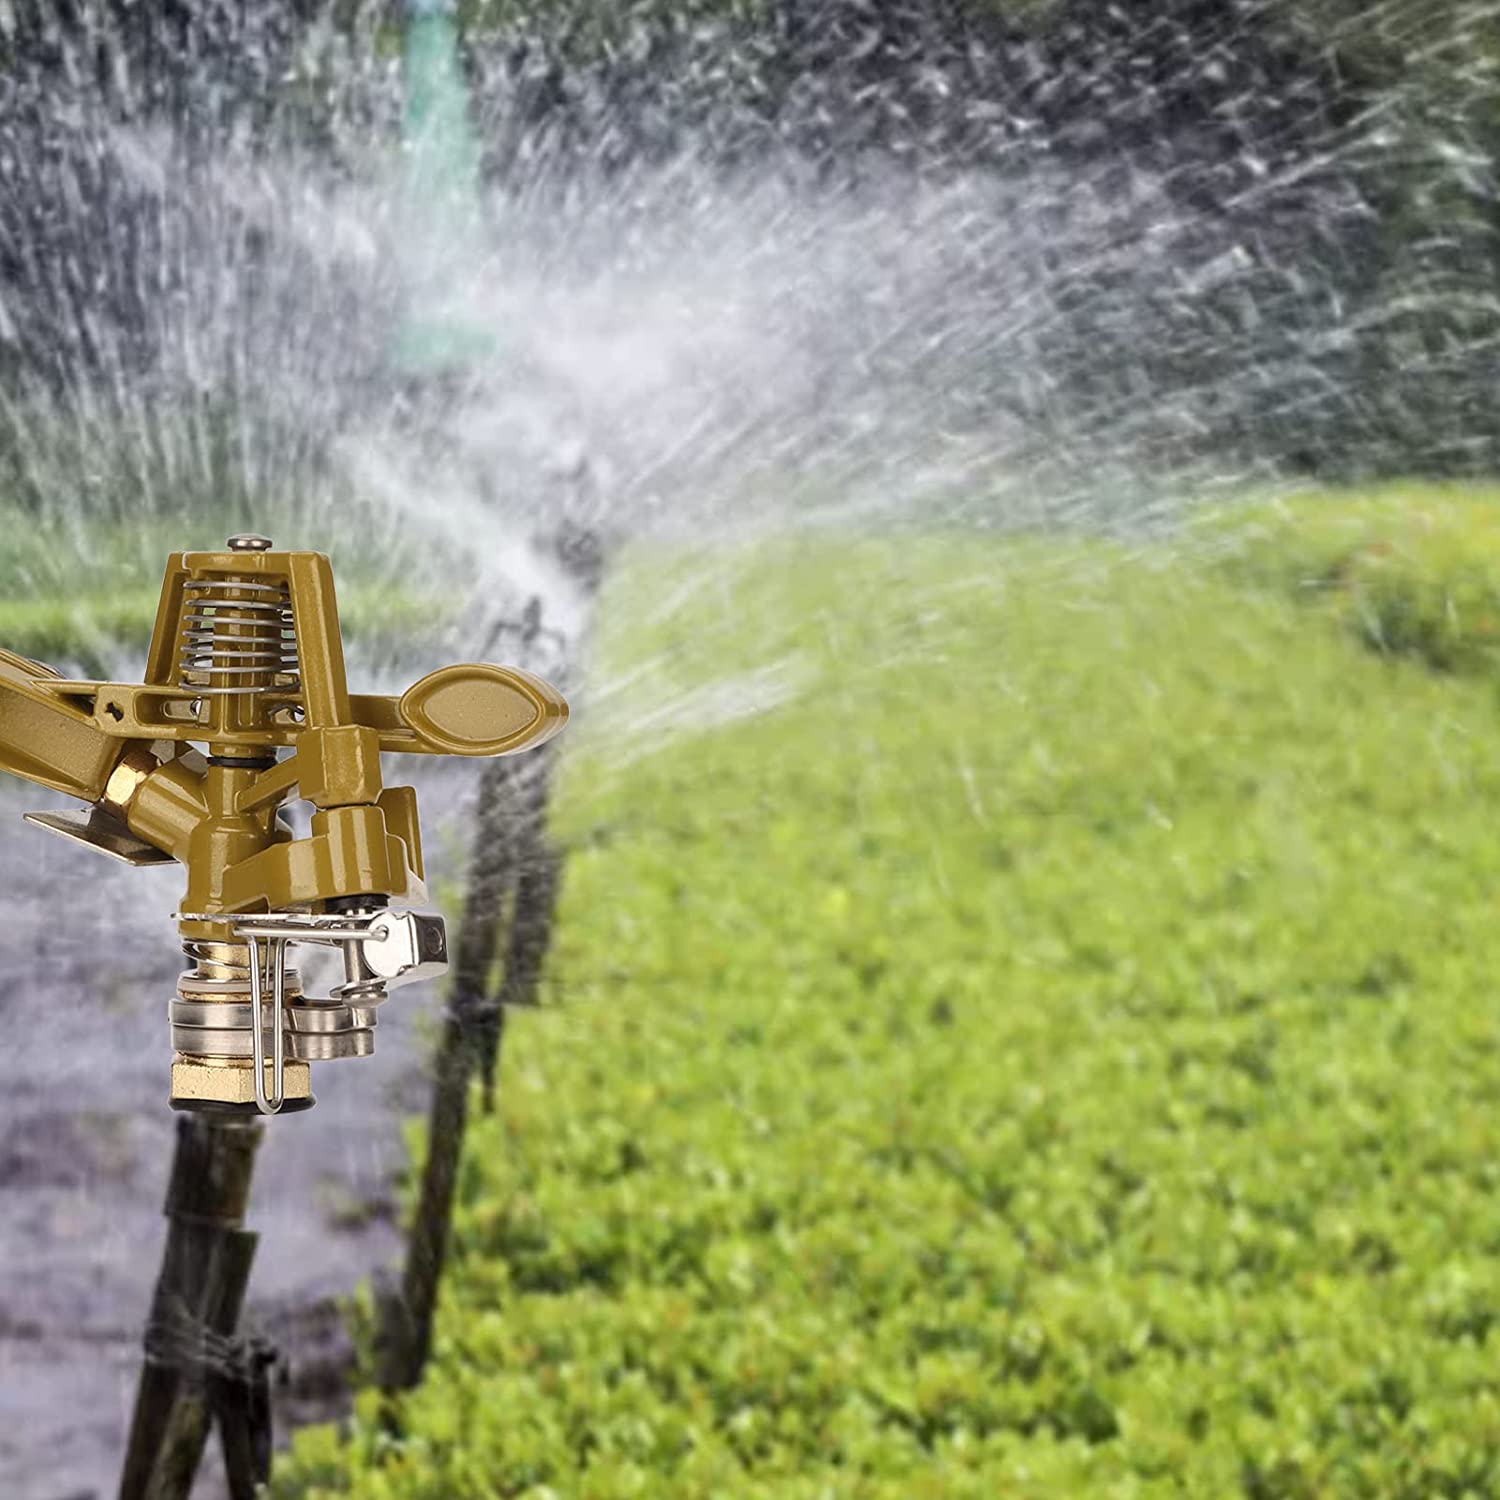 3/4-In Brass Impact Sprinkler on Adjustable Tripod Base - Hoses, Sprinklers  & Watering Tools, Orbit